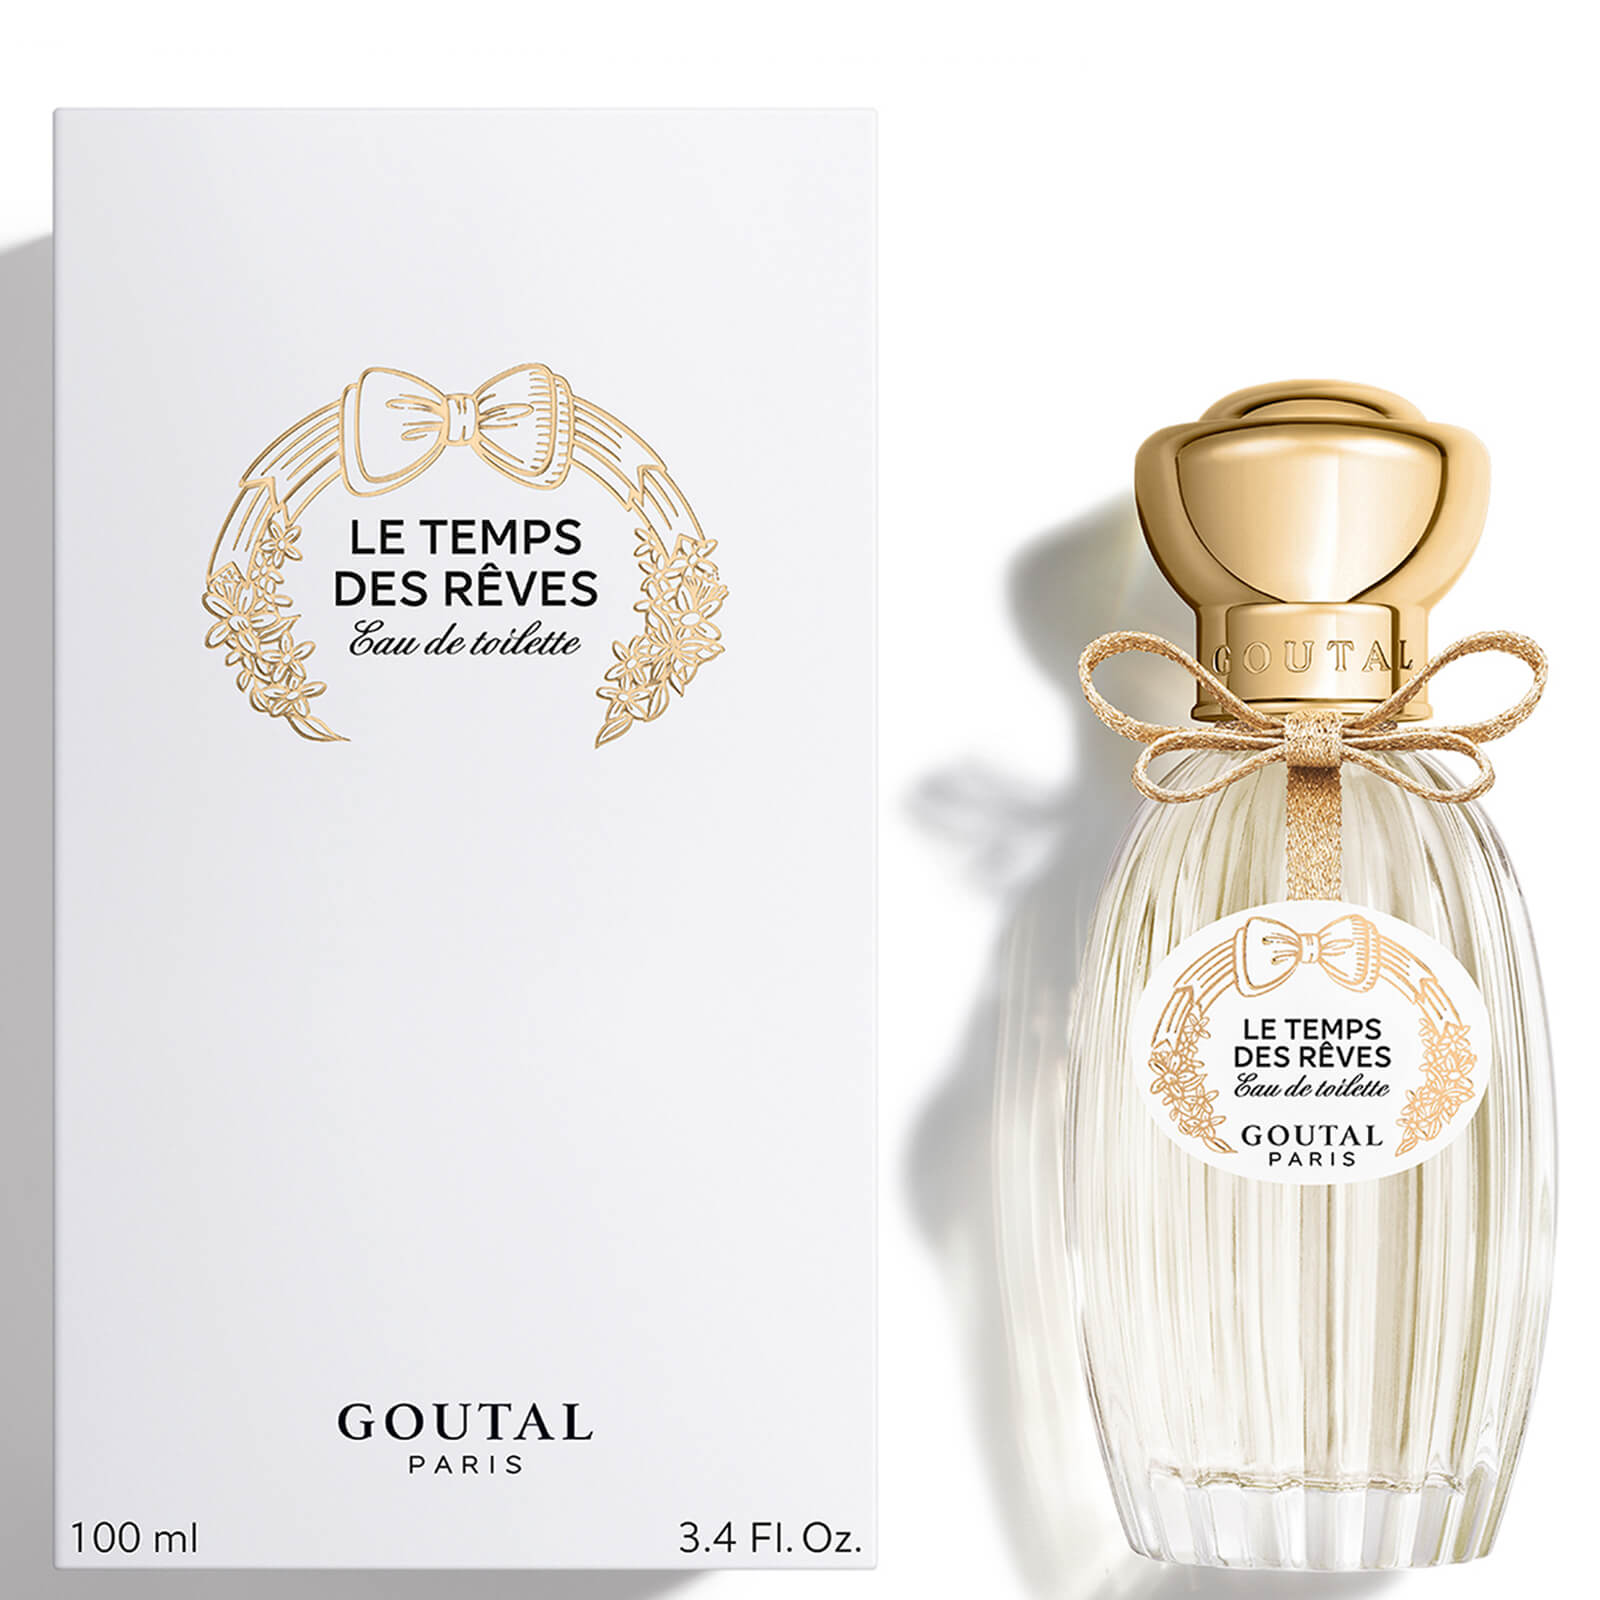 Photos - Women's Fragrance Goutal Paris Goutal Les Temps de Rêves Eau de Toilette 100ml G220110875 